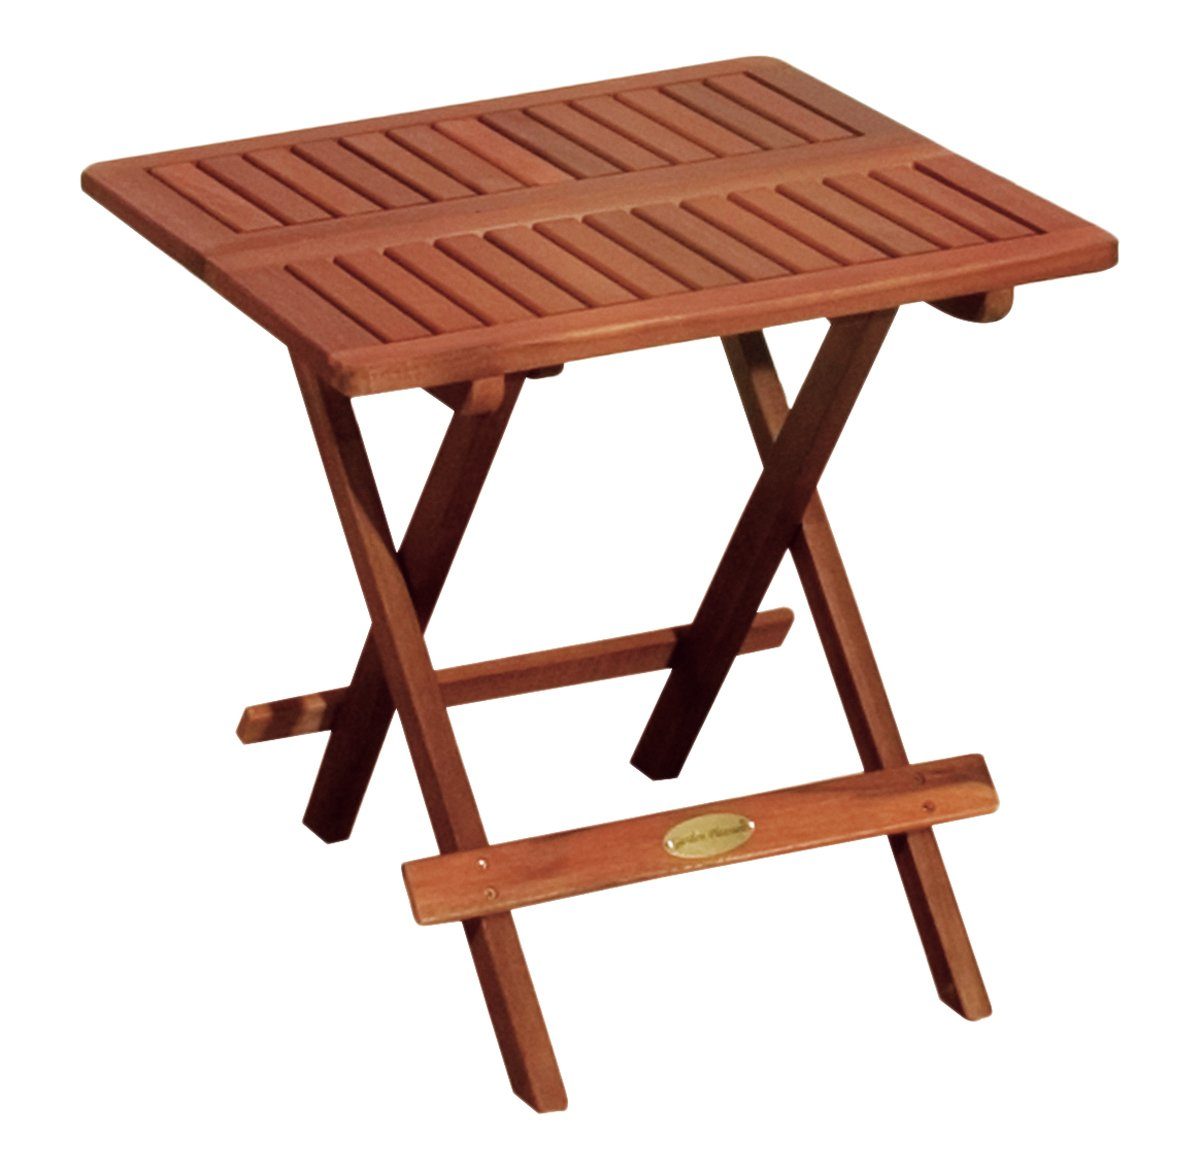 Gravidus Klapptisch Tisch Klapptisch Holztisch Gartentisch Balkontisch  klappbar 50x50cm